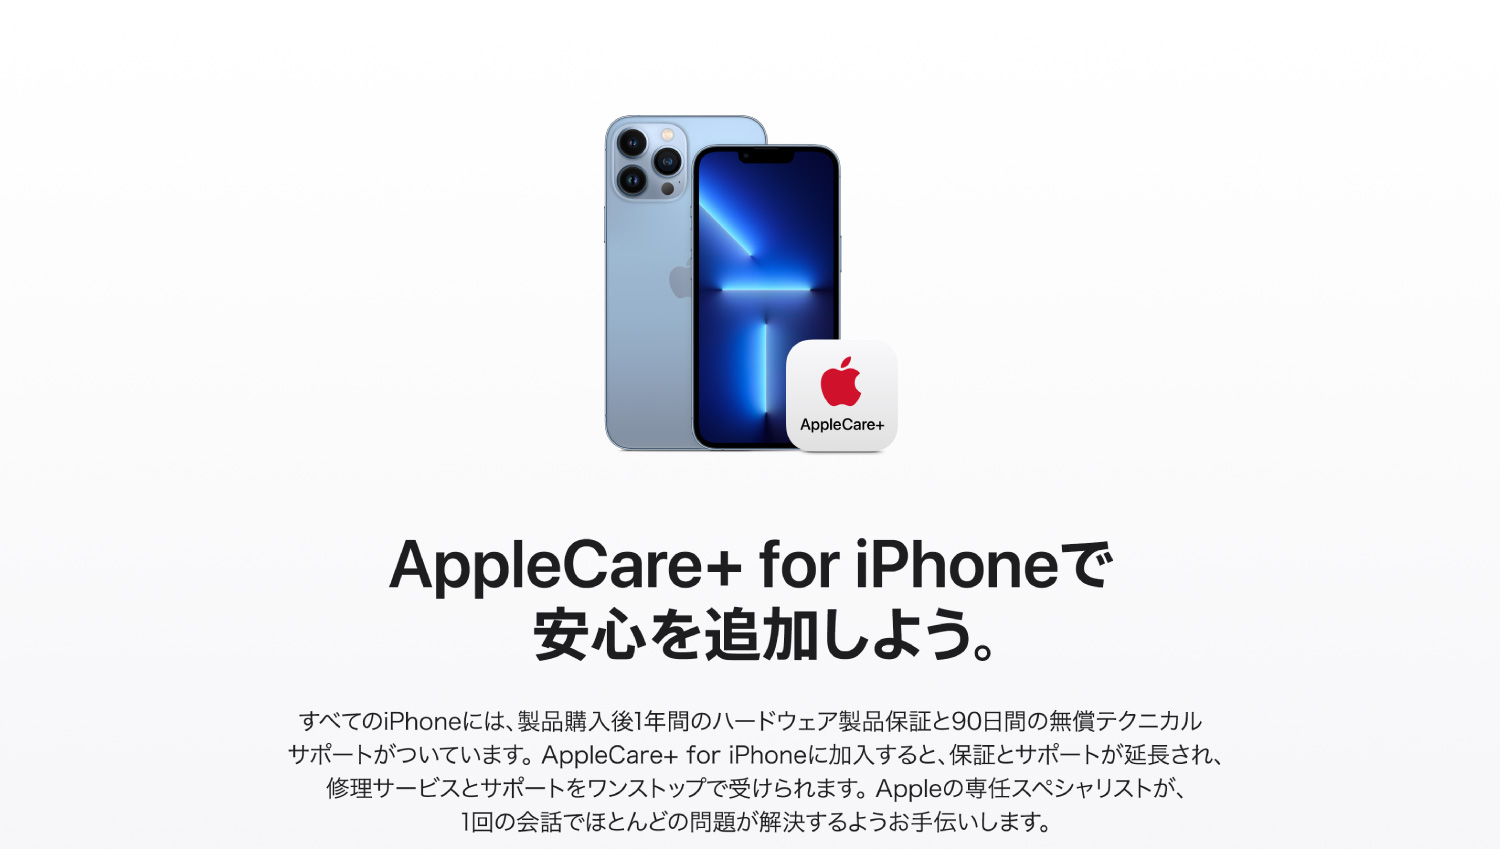 用AppleCare+for iPhone追加安心吧。